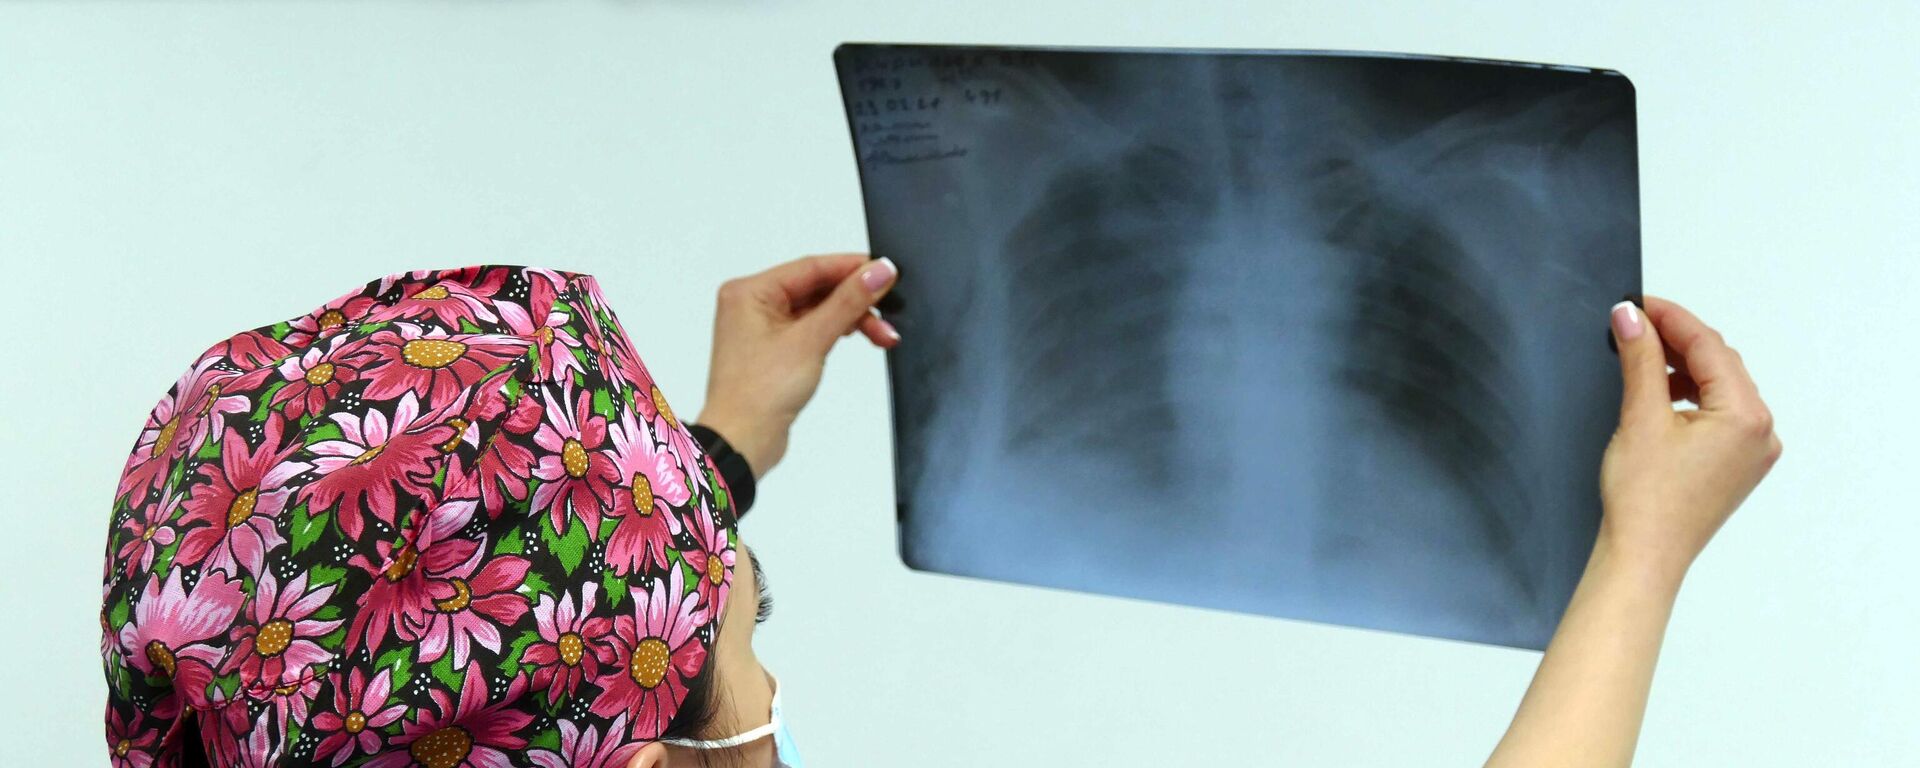 Медик госпиталя смотрит рентгеновский снимок легких пациента - Sputnik Таджикистан, 1920, 09.12.2021